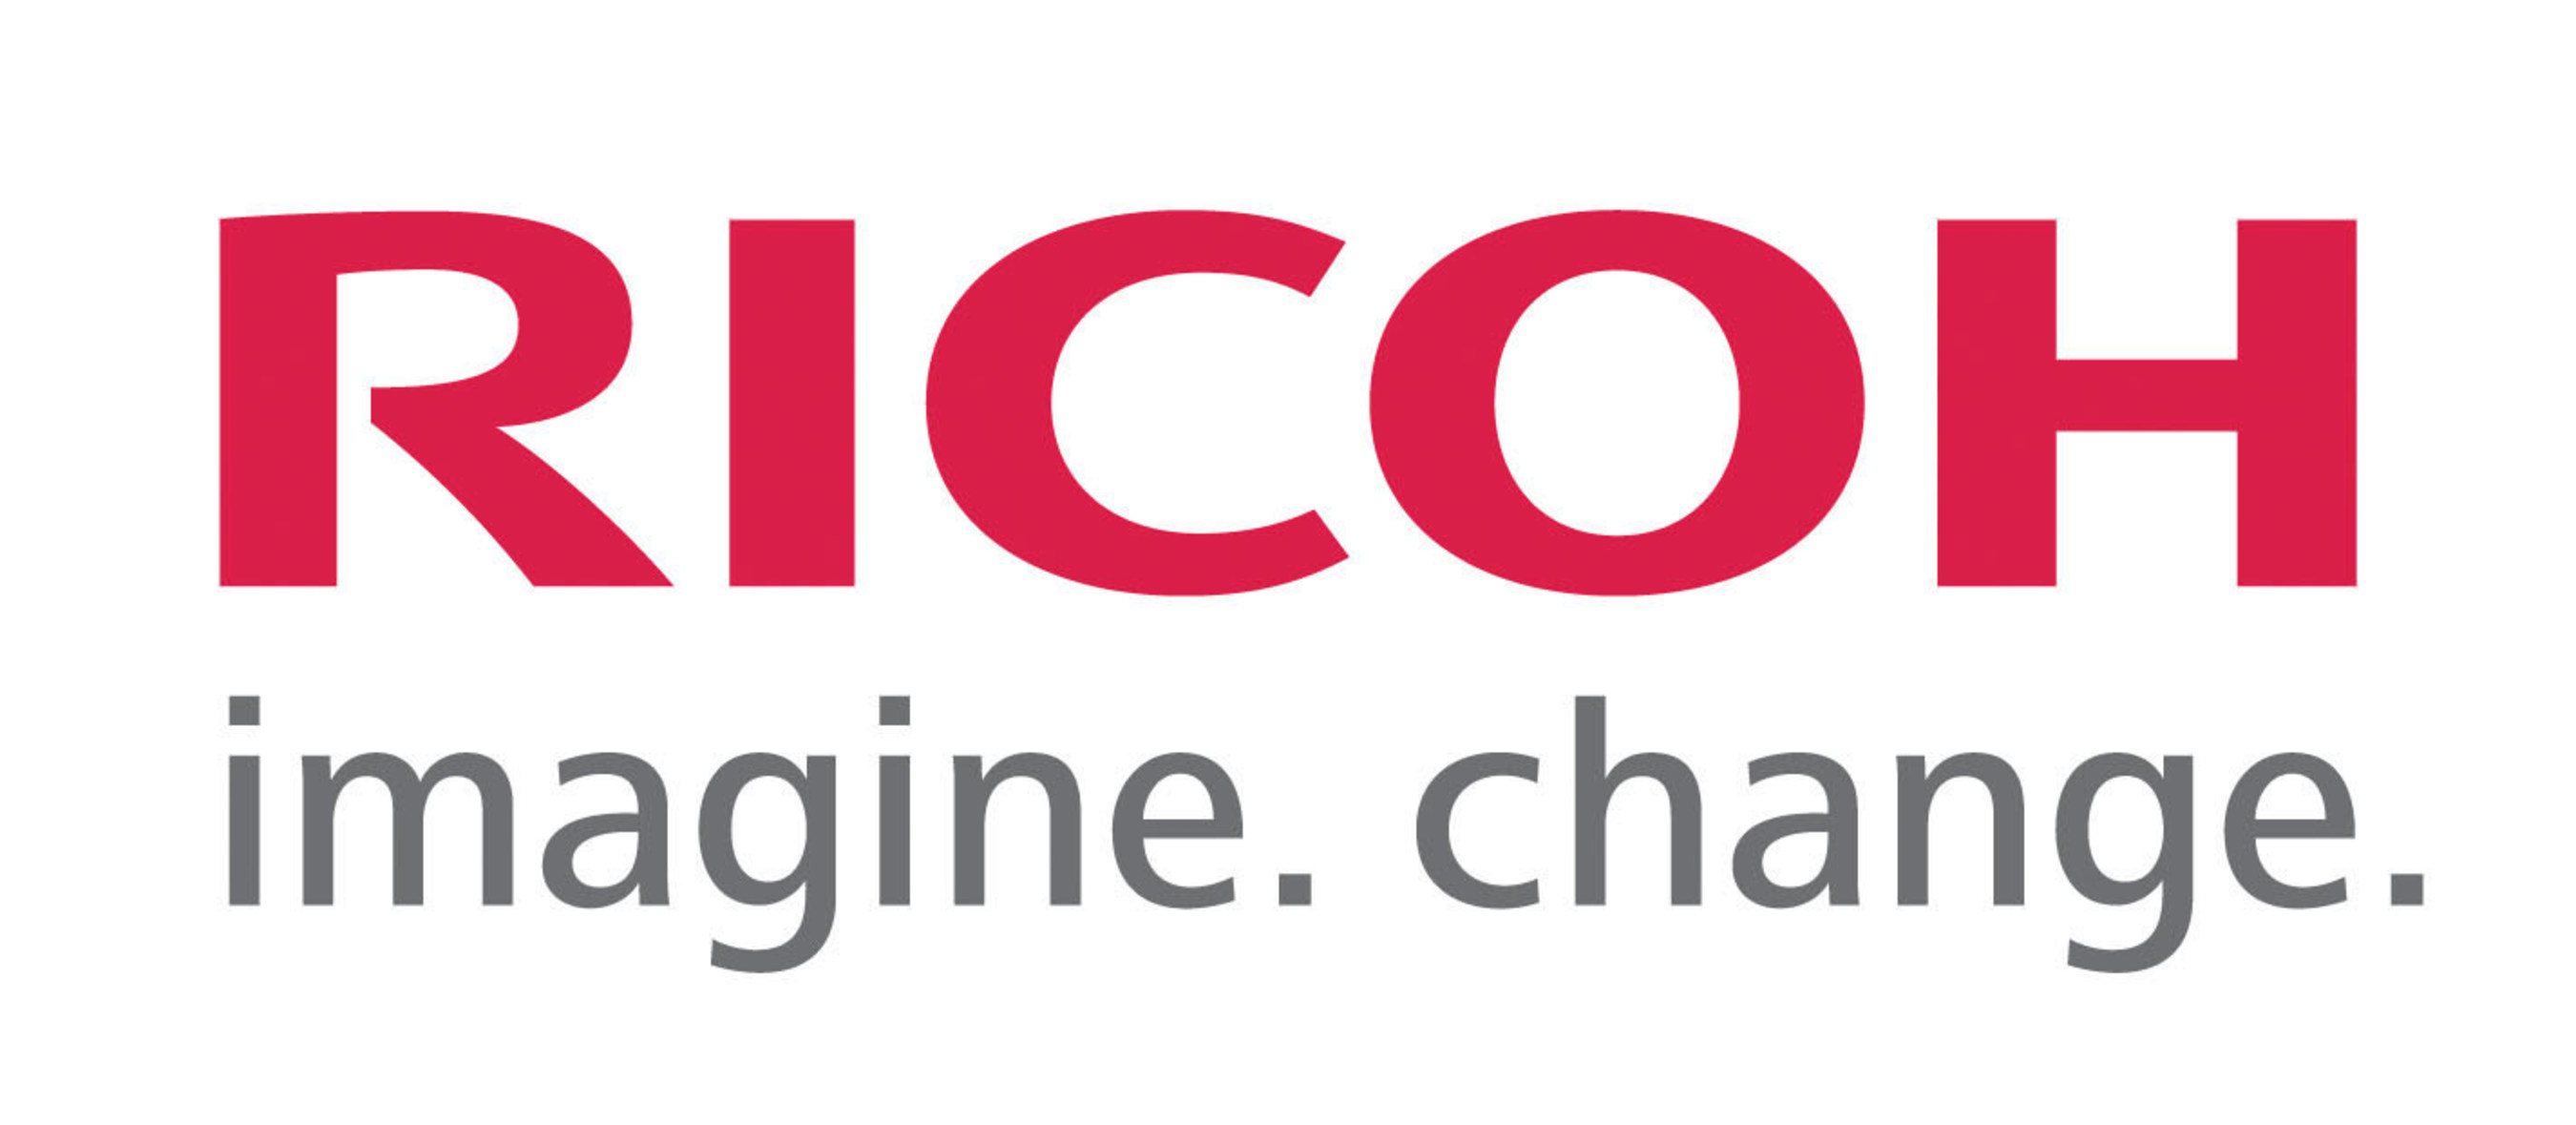 Ricoh Americas Corporation logo.